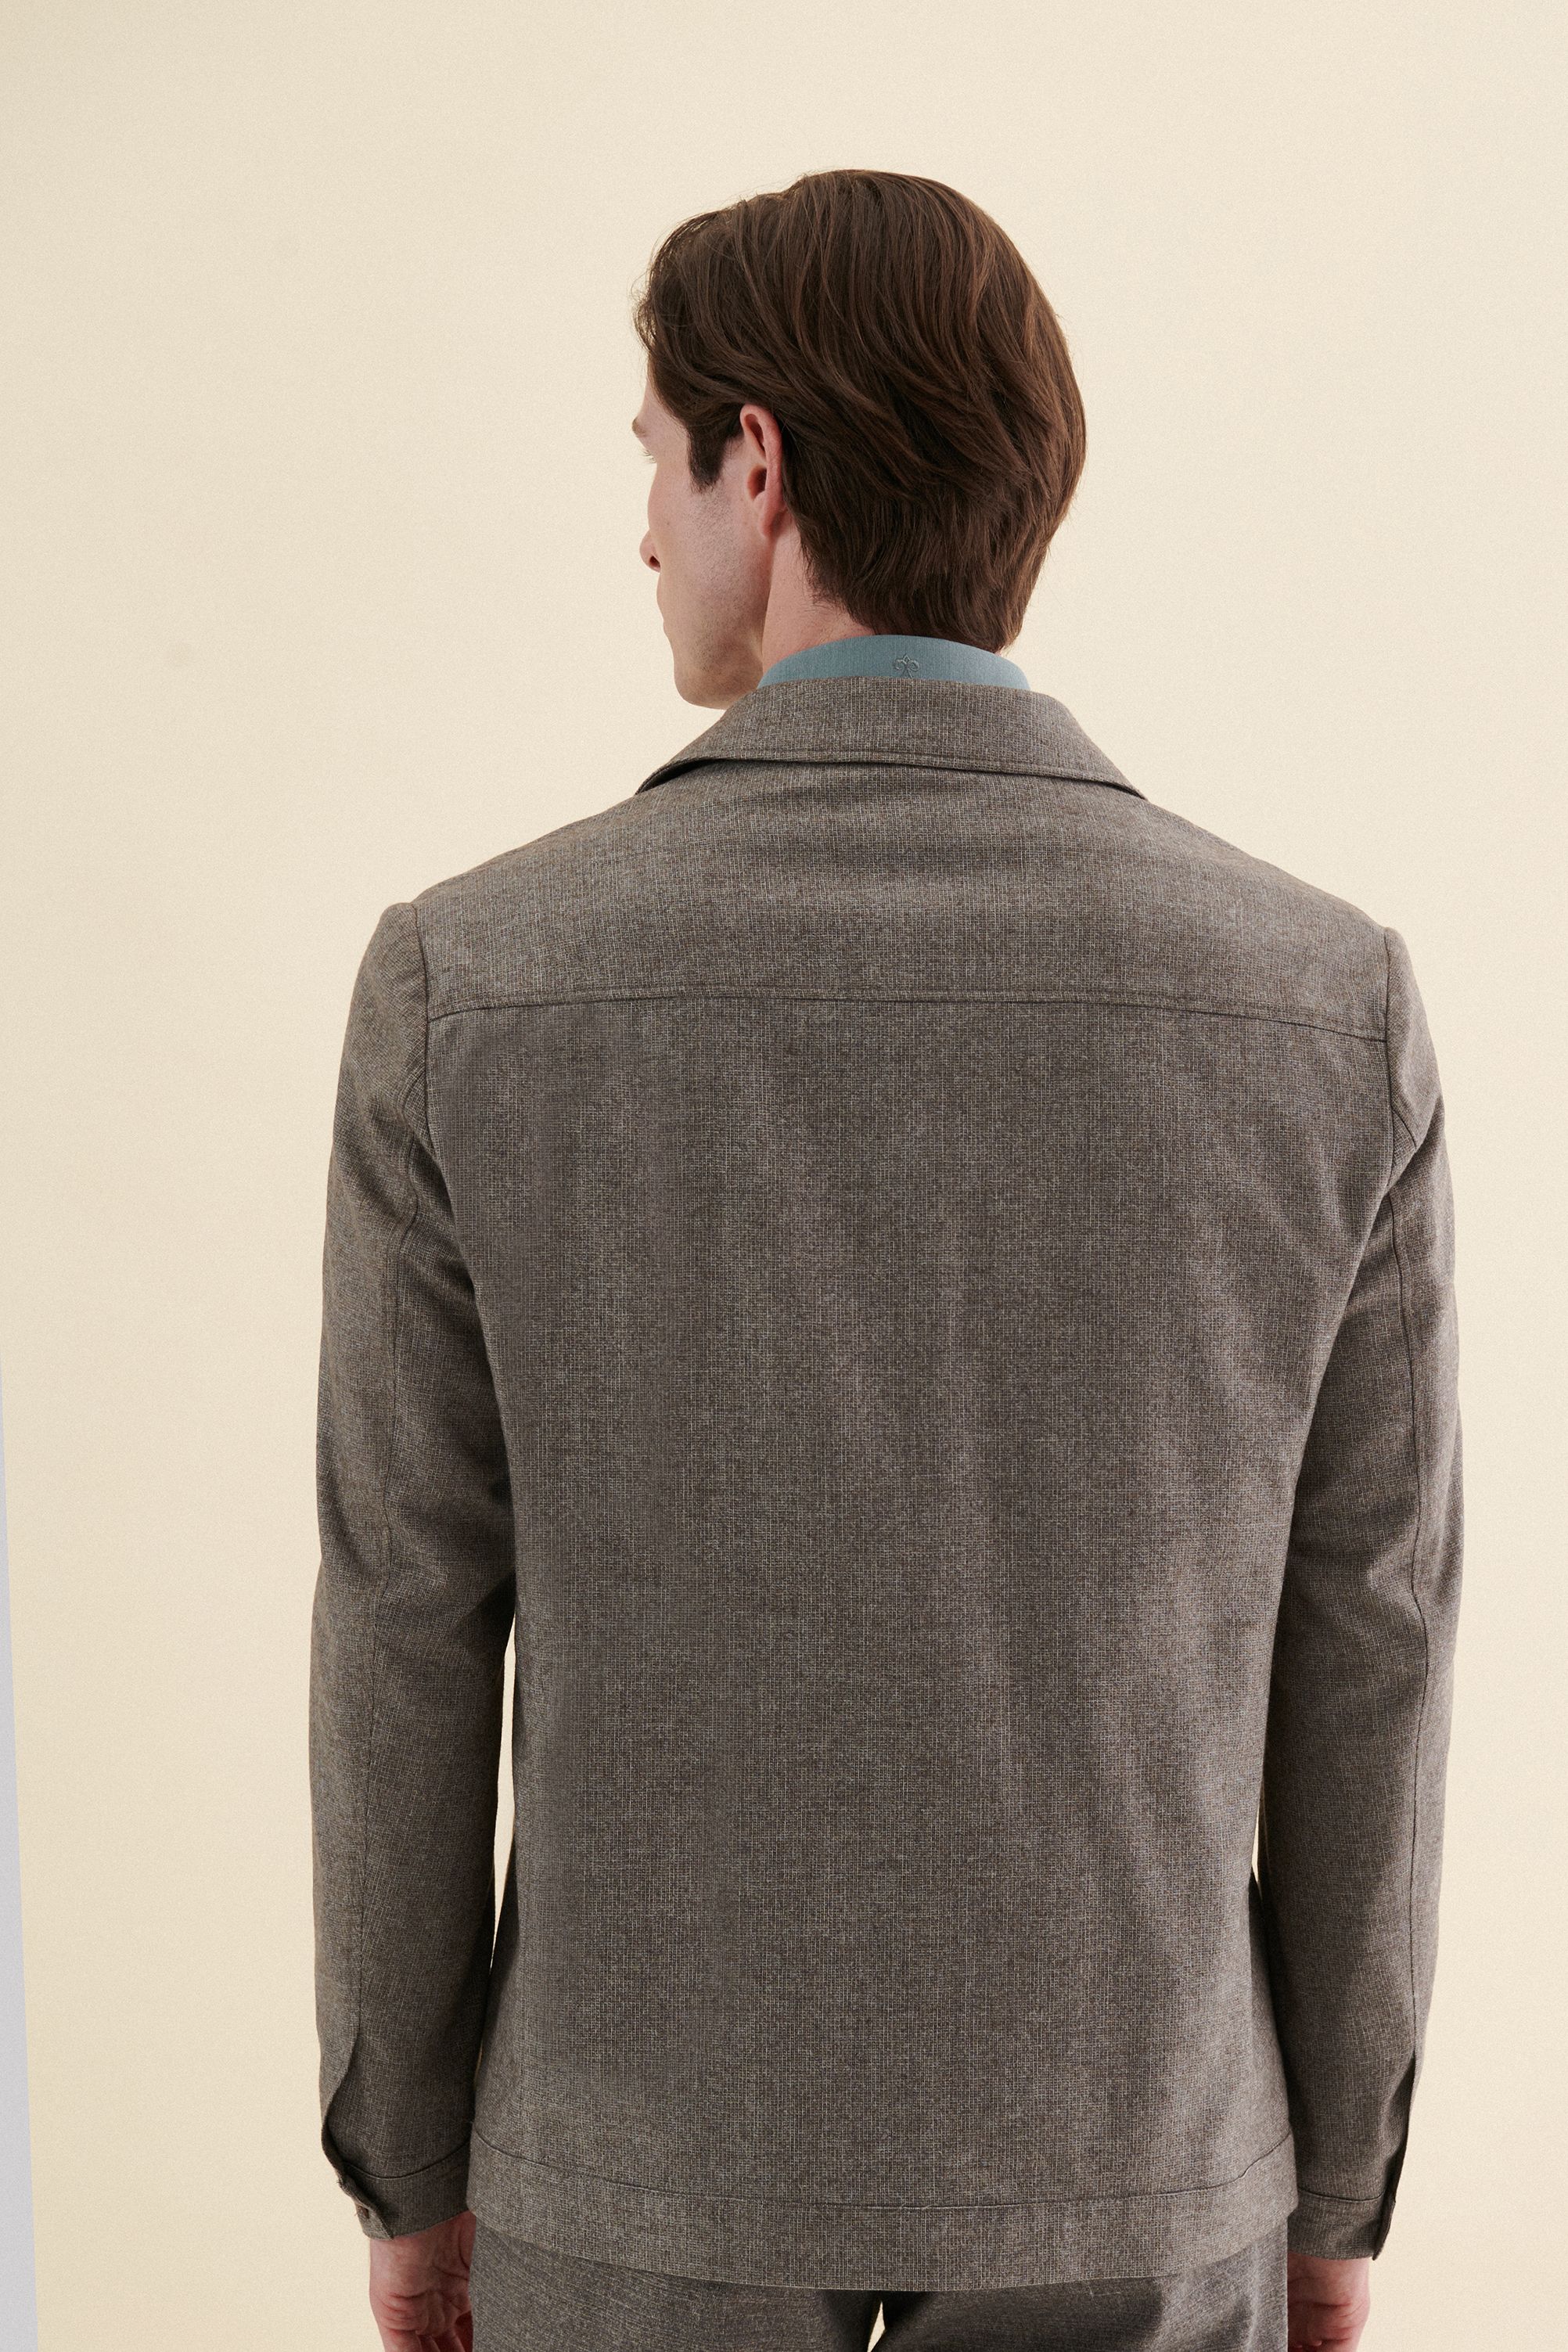 Damat Tween Damat Comfort Kahverengi Düz %100 Yün Kumaş Ceket. 4